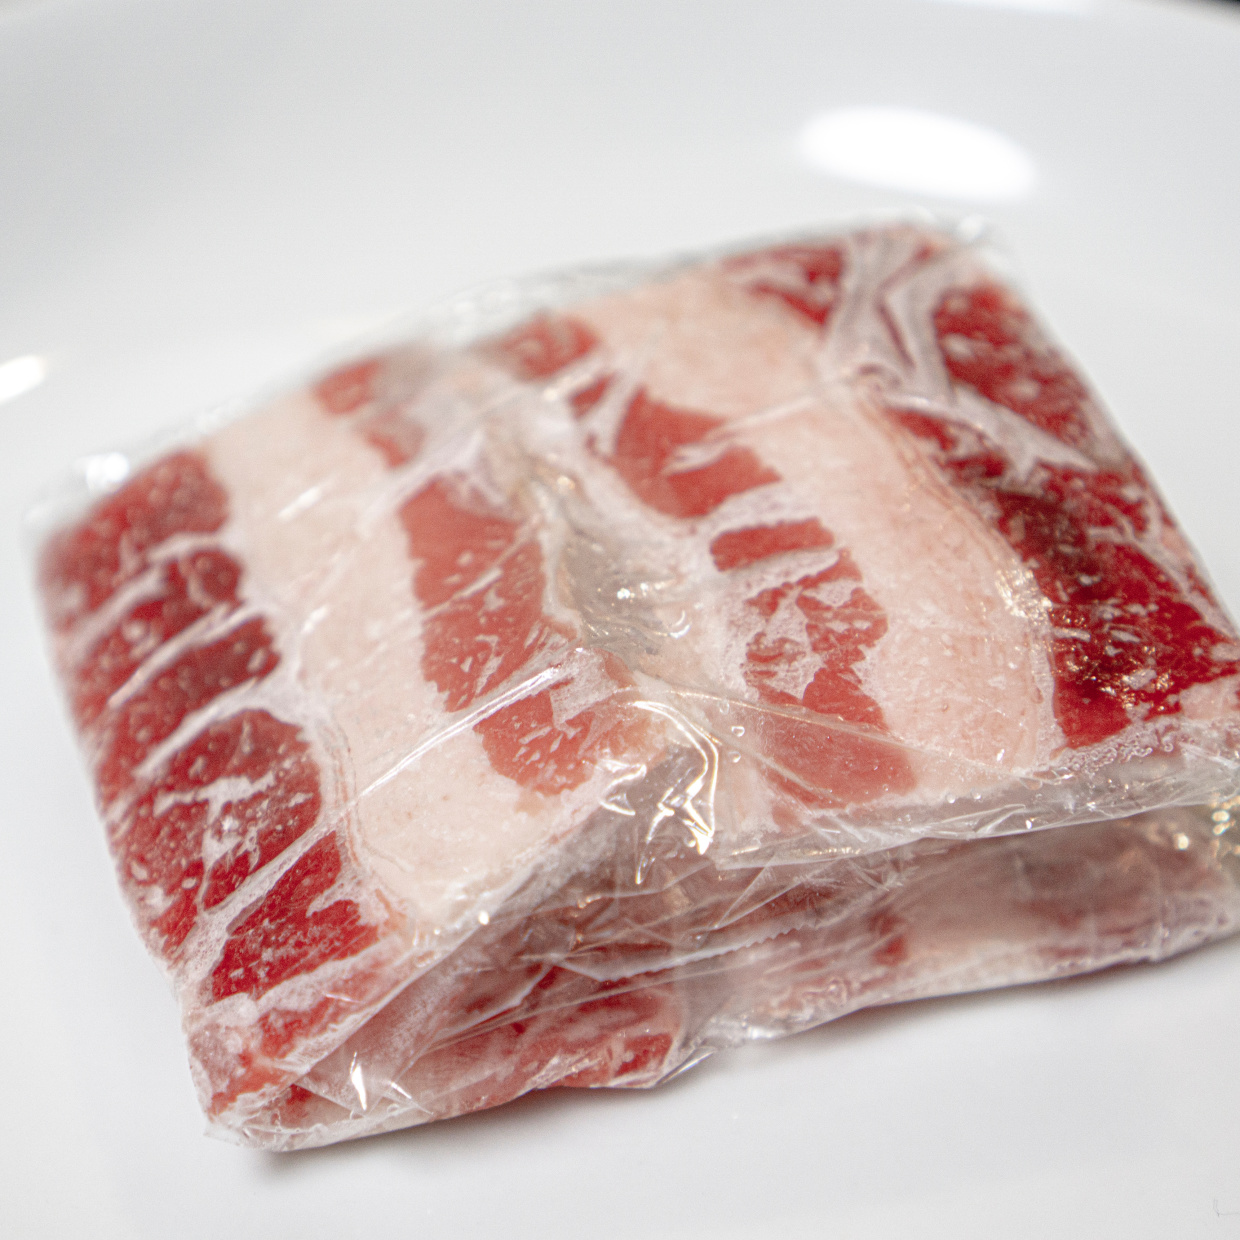  「冷凍肉」をムラなく解凍する方法【知って得する料理ワザ】 